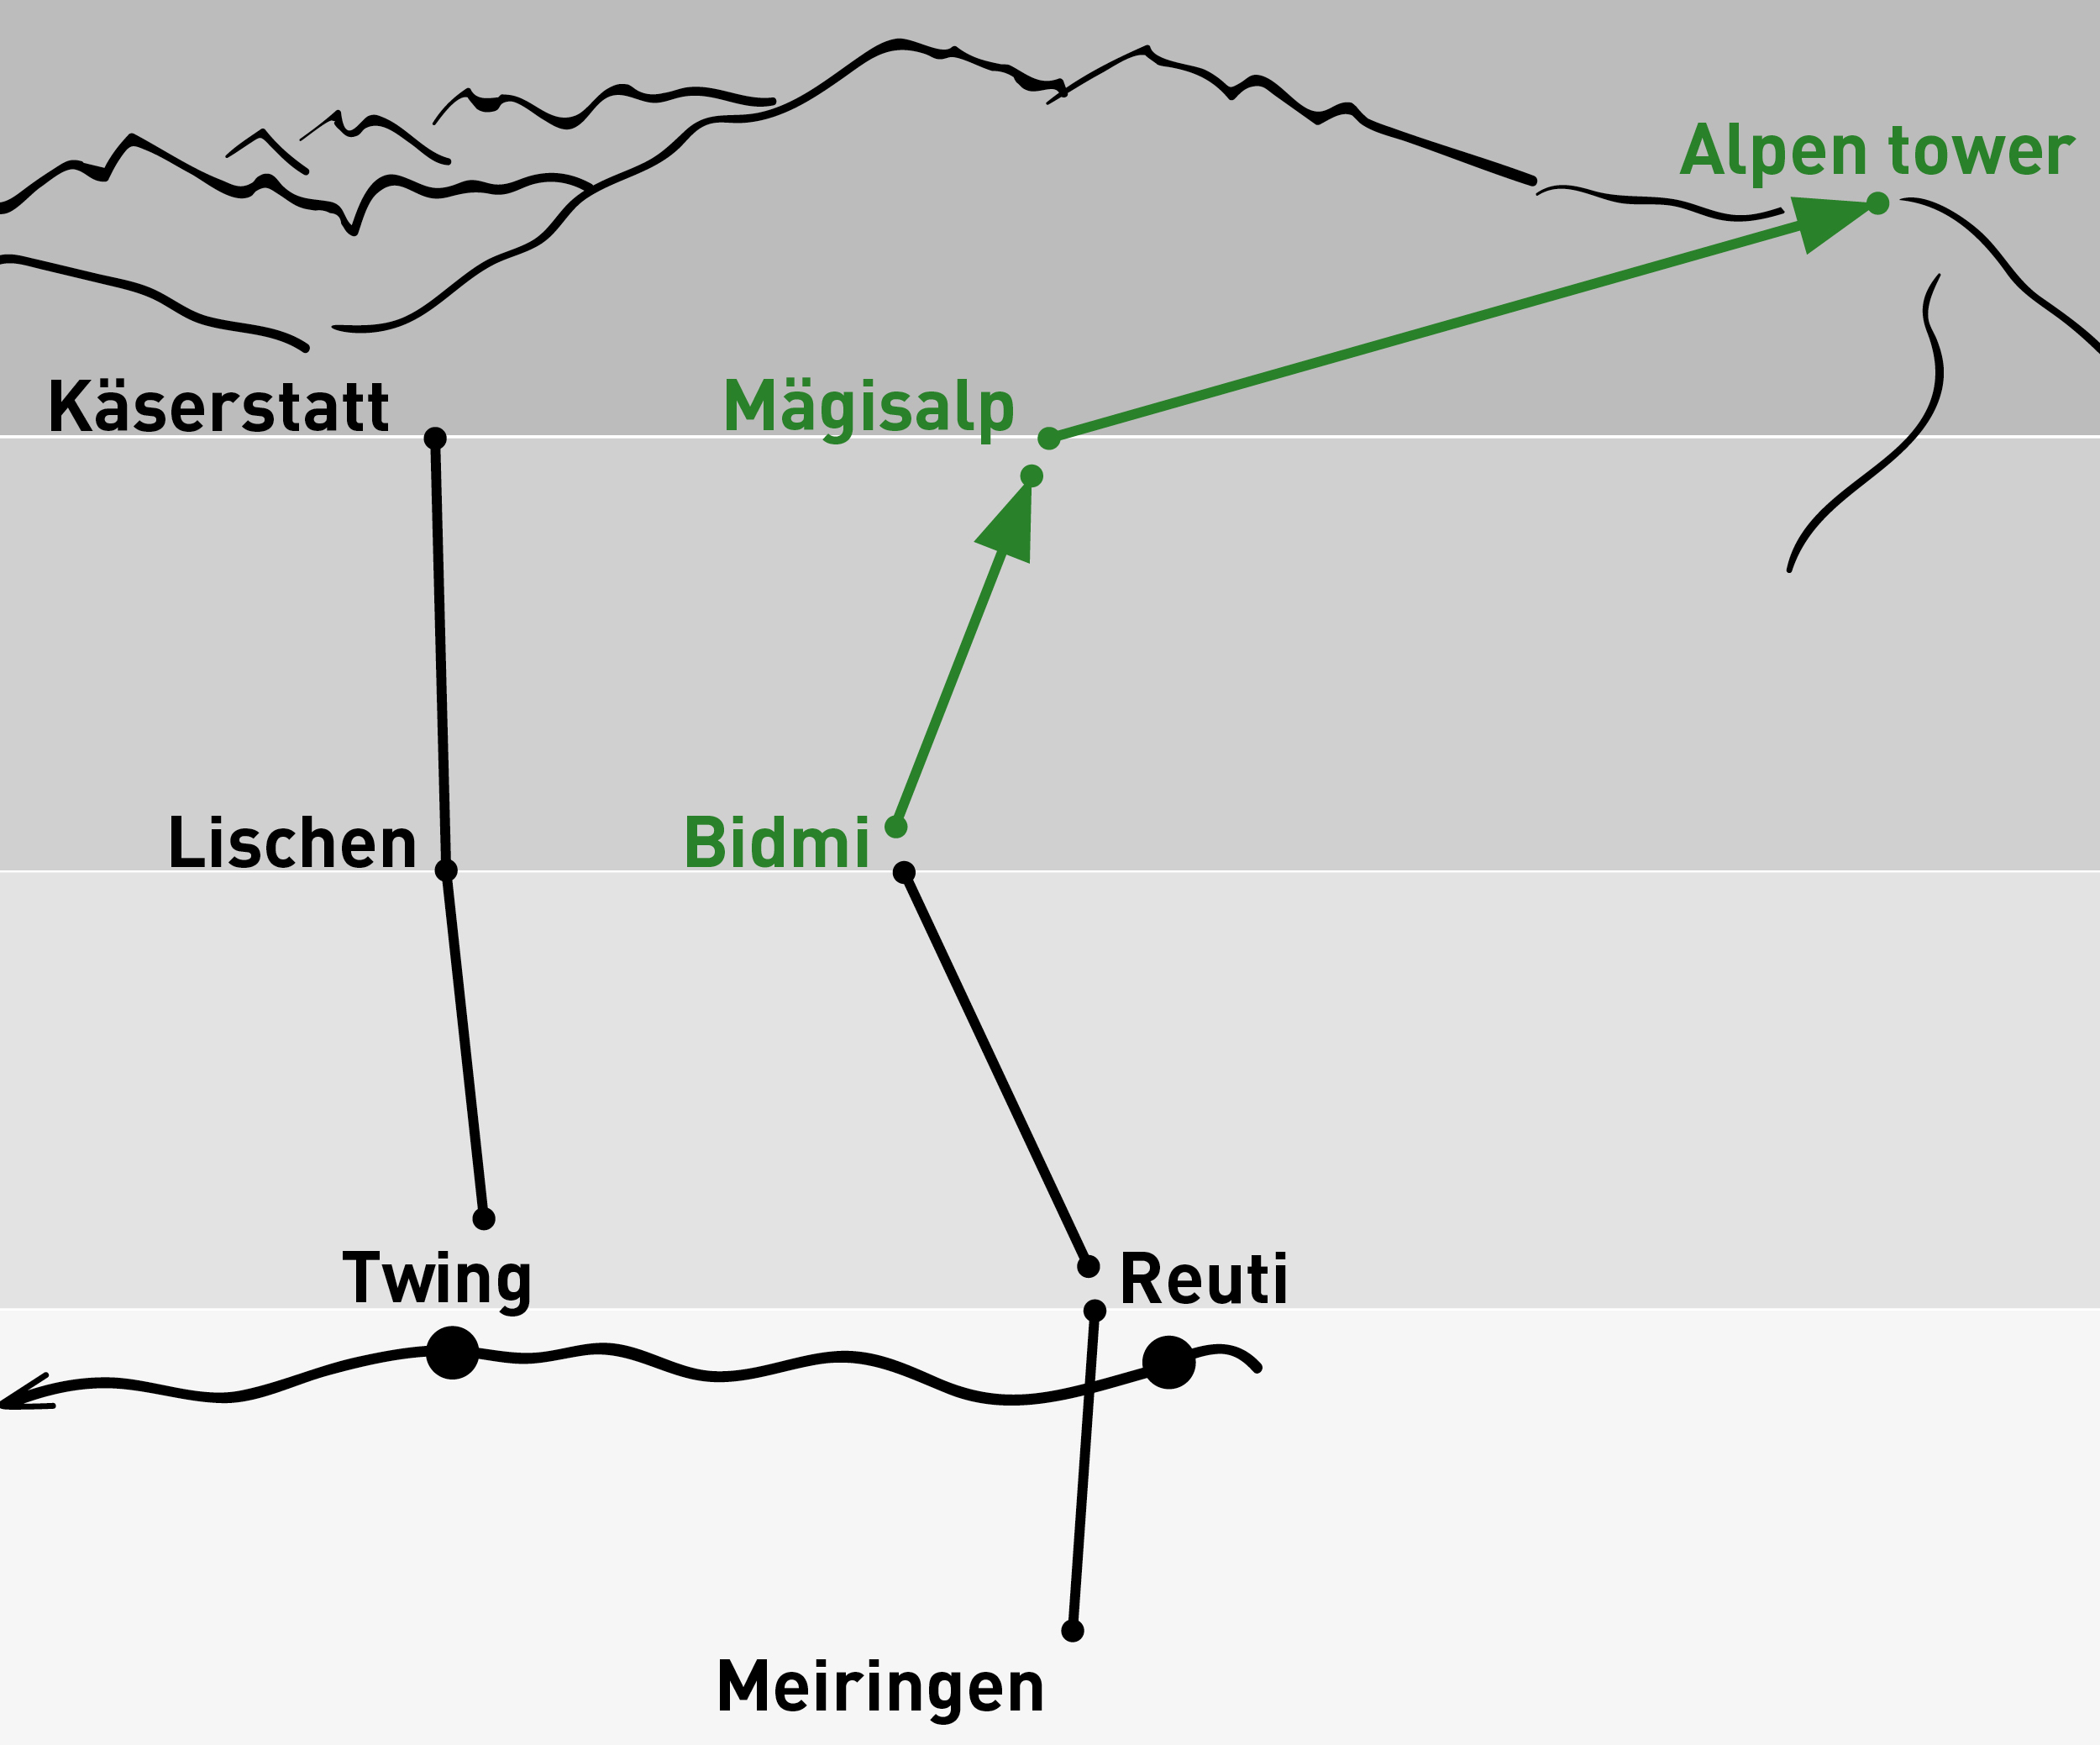 Bidmi – Alpen tower | Einfache Fahrt